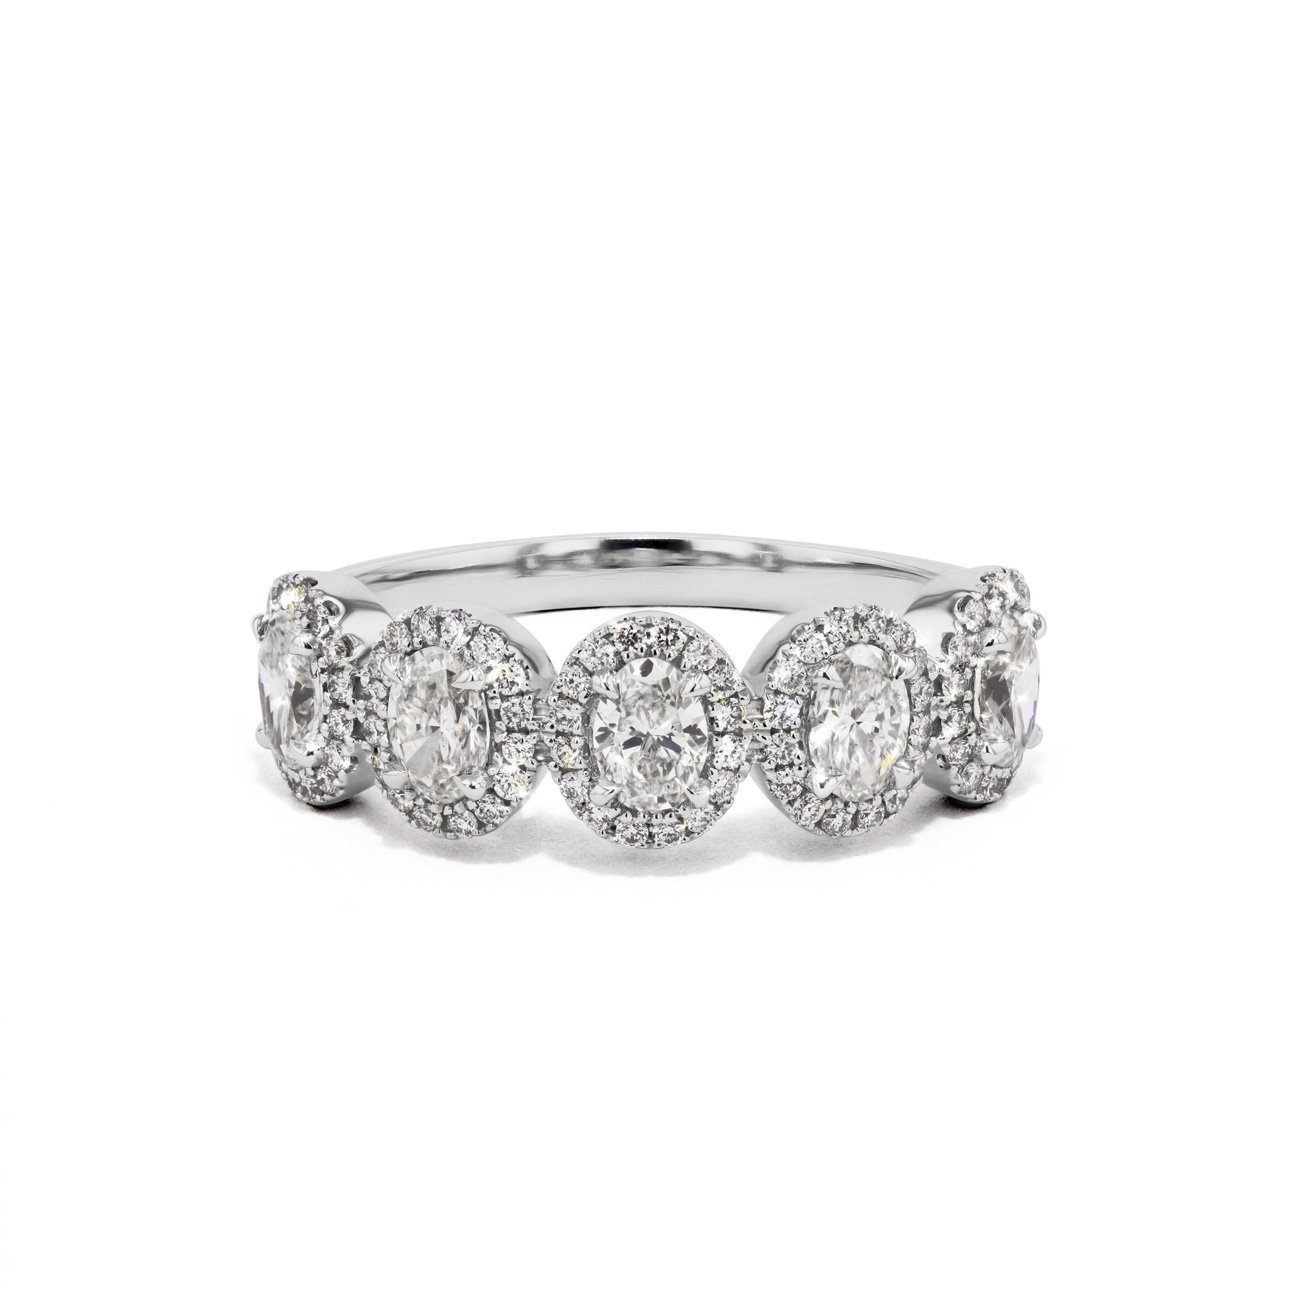 Alexis Oval Diamond Ring Ring Princess Bride Diamonds 